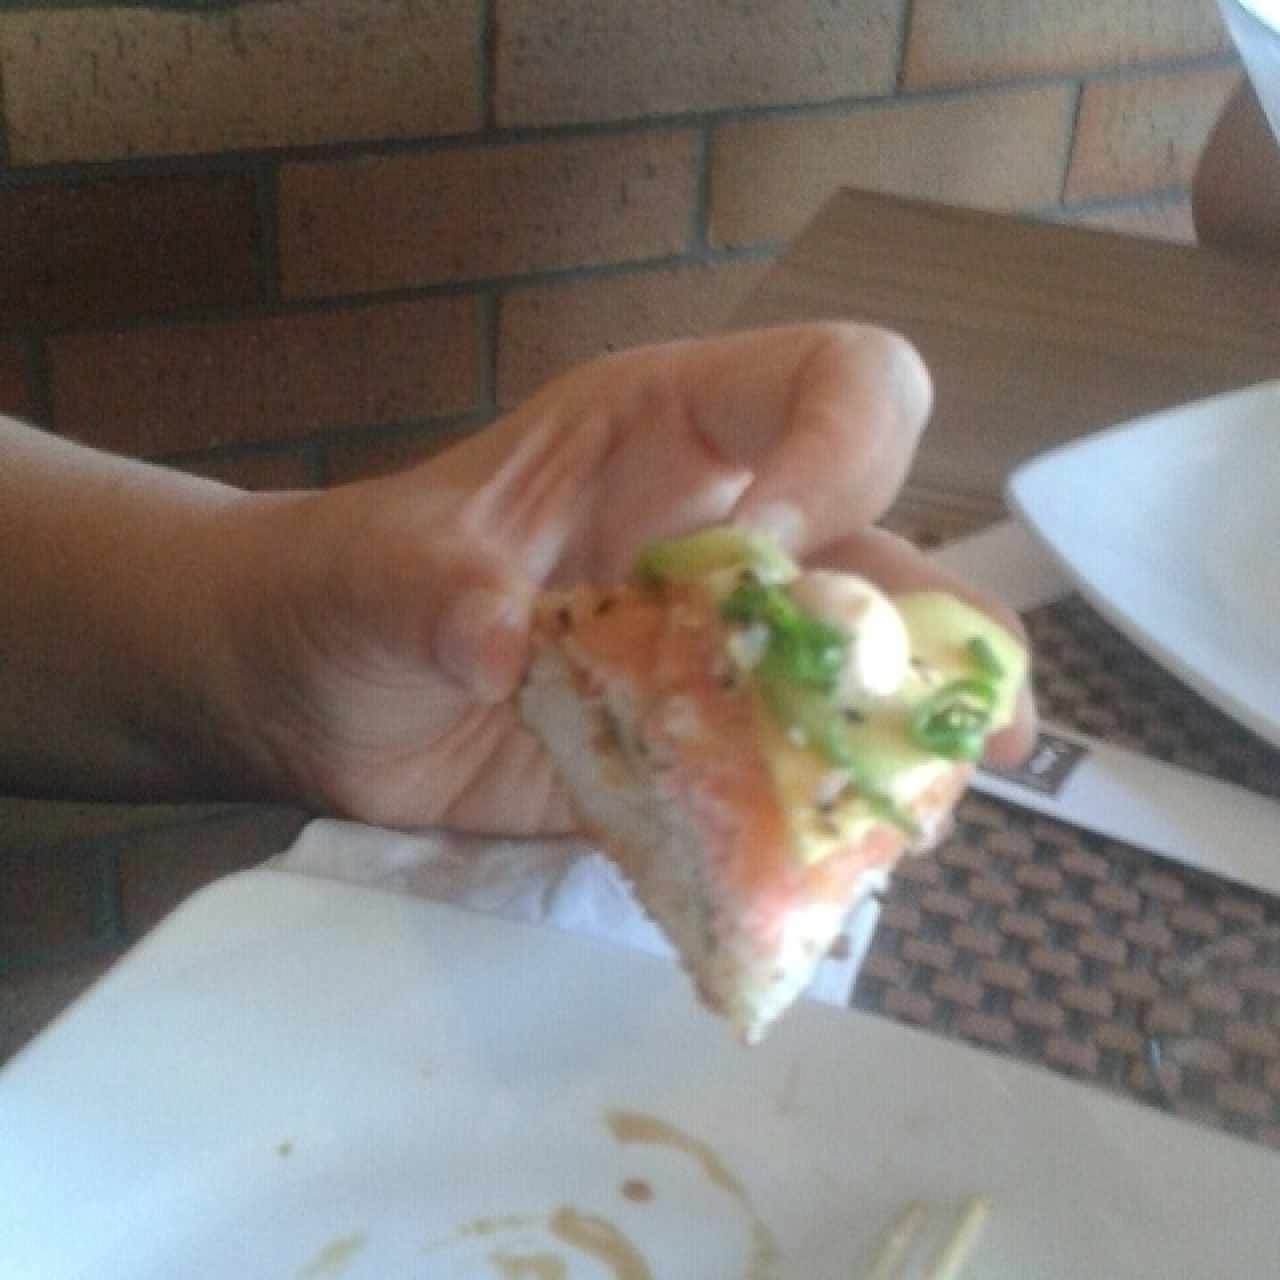 pizza roll de salmón... solo quedaba este...